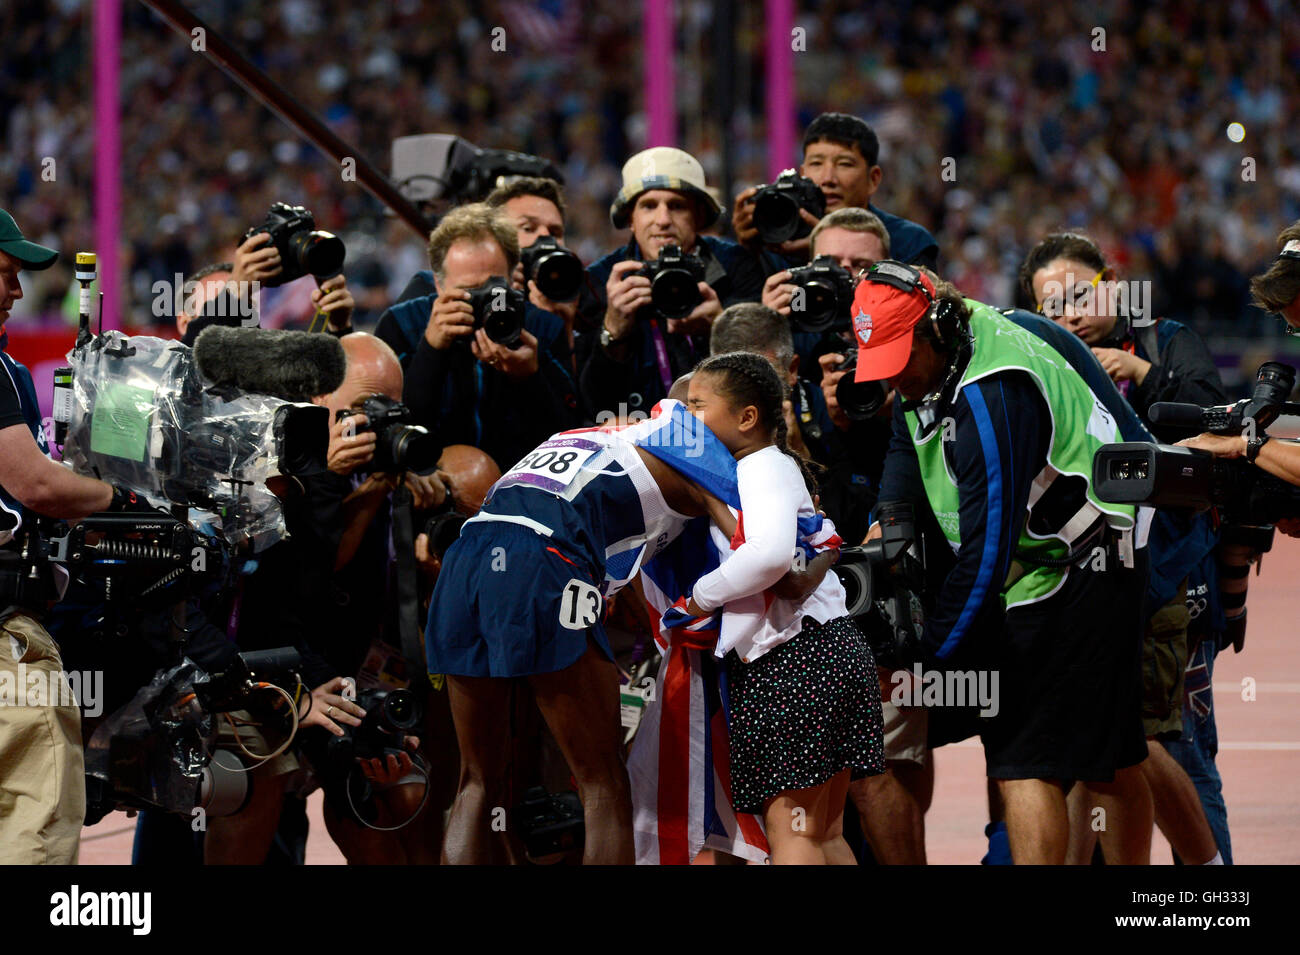 London 2012 - Olympiade: Leichtathletik - Herren-10.000-Meter-Finale.  Mohamed Farah - Großbritannien nach dem Gewinn der Goldmedaille. Stockfoto